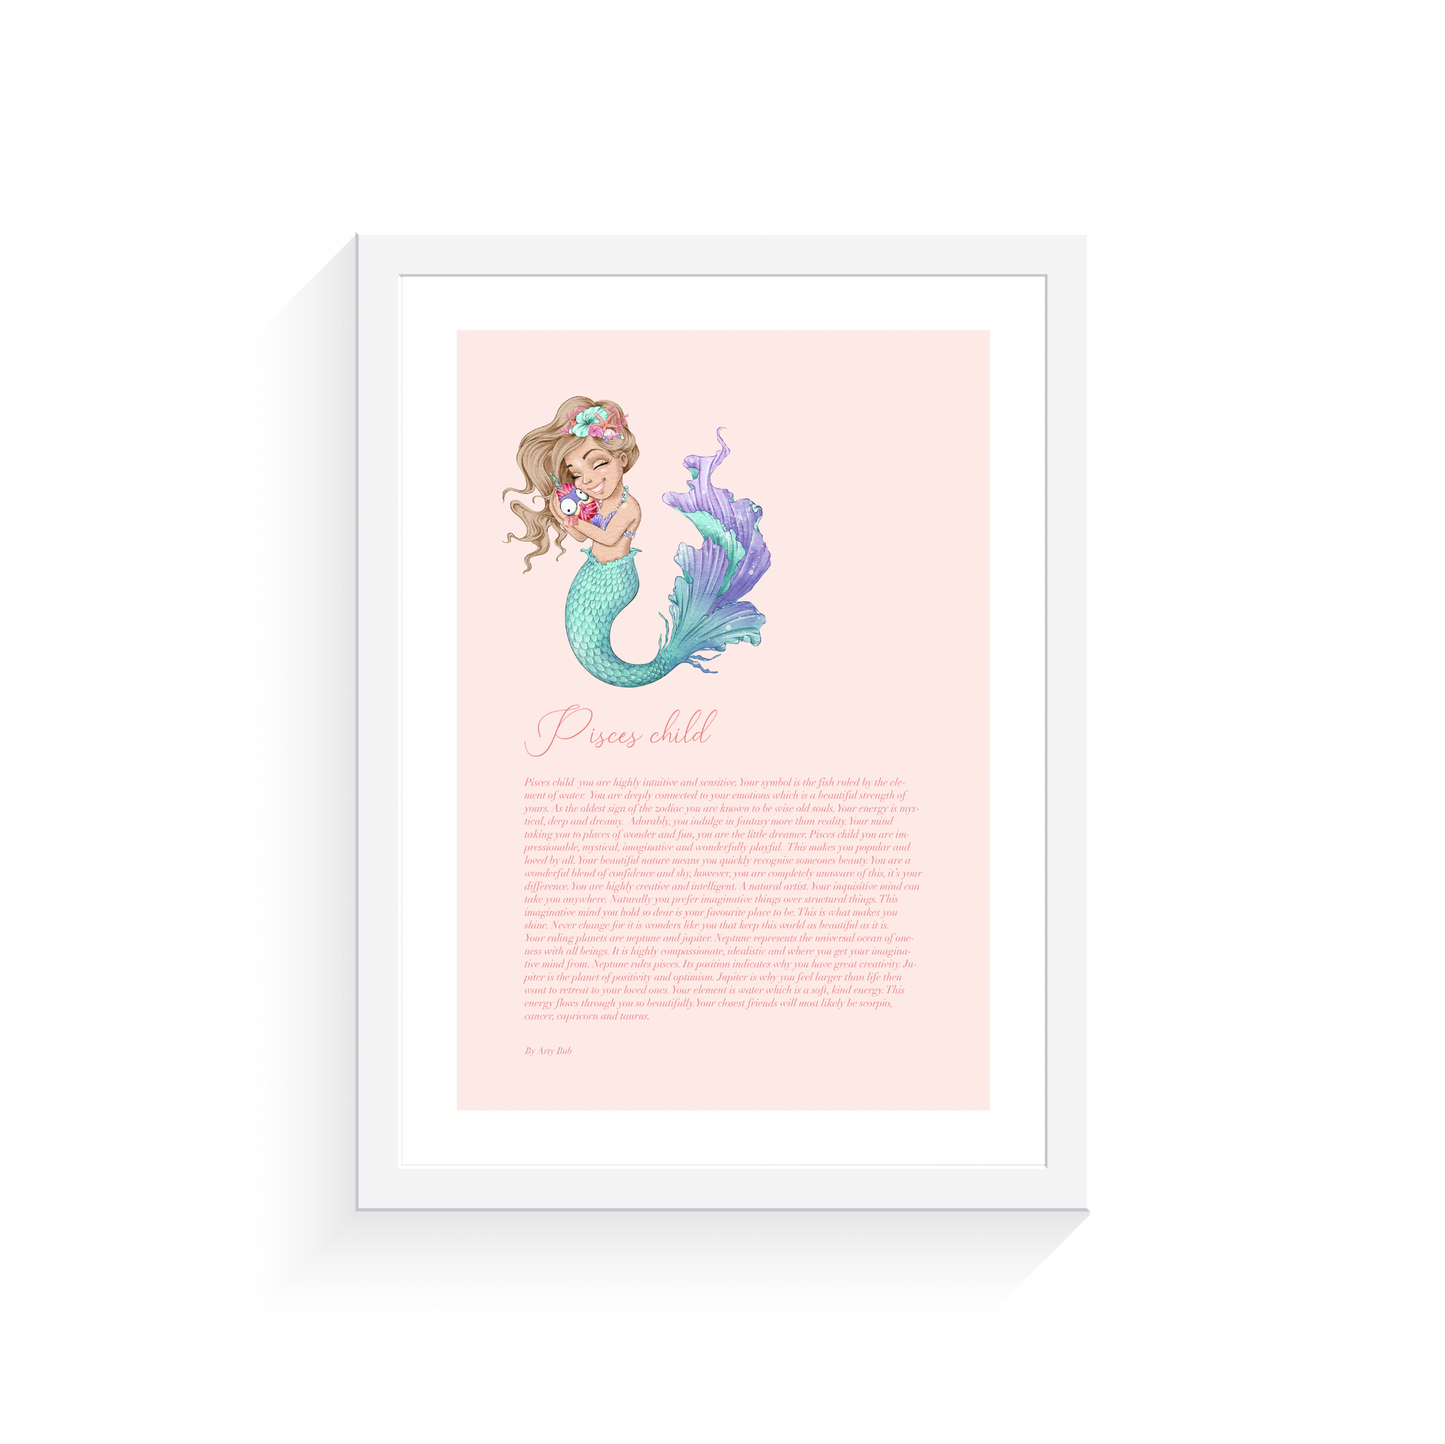 Pisces Child Mermaid